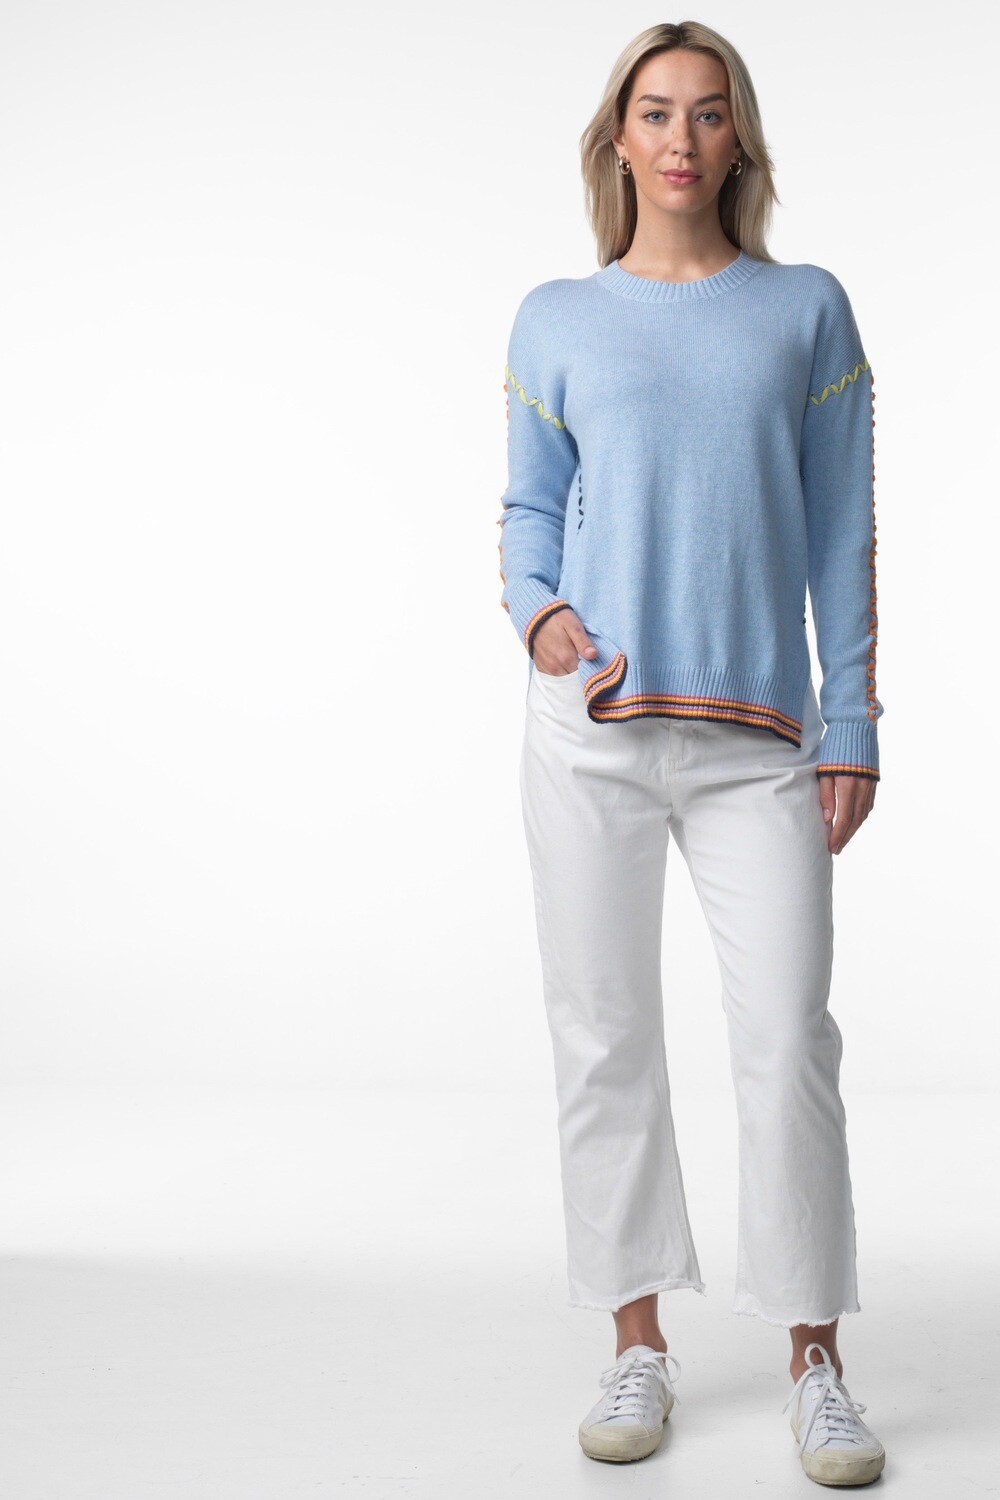 Cotton & Cashmere Thread Detail Sweater by Zaket & Plover